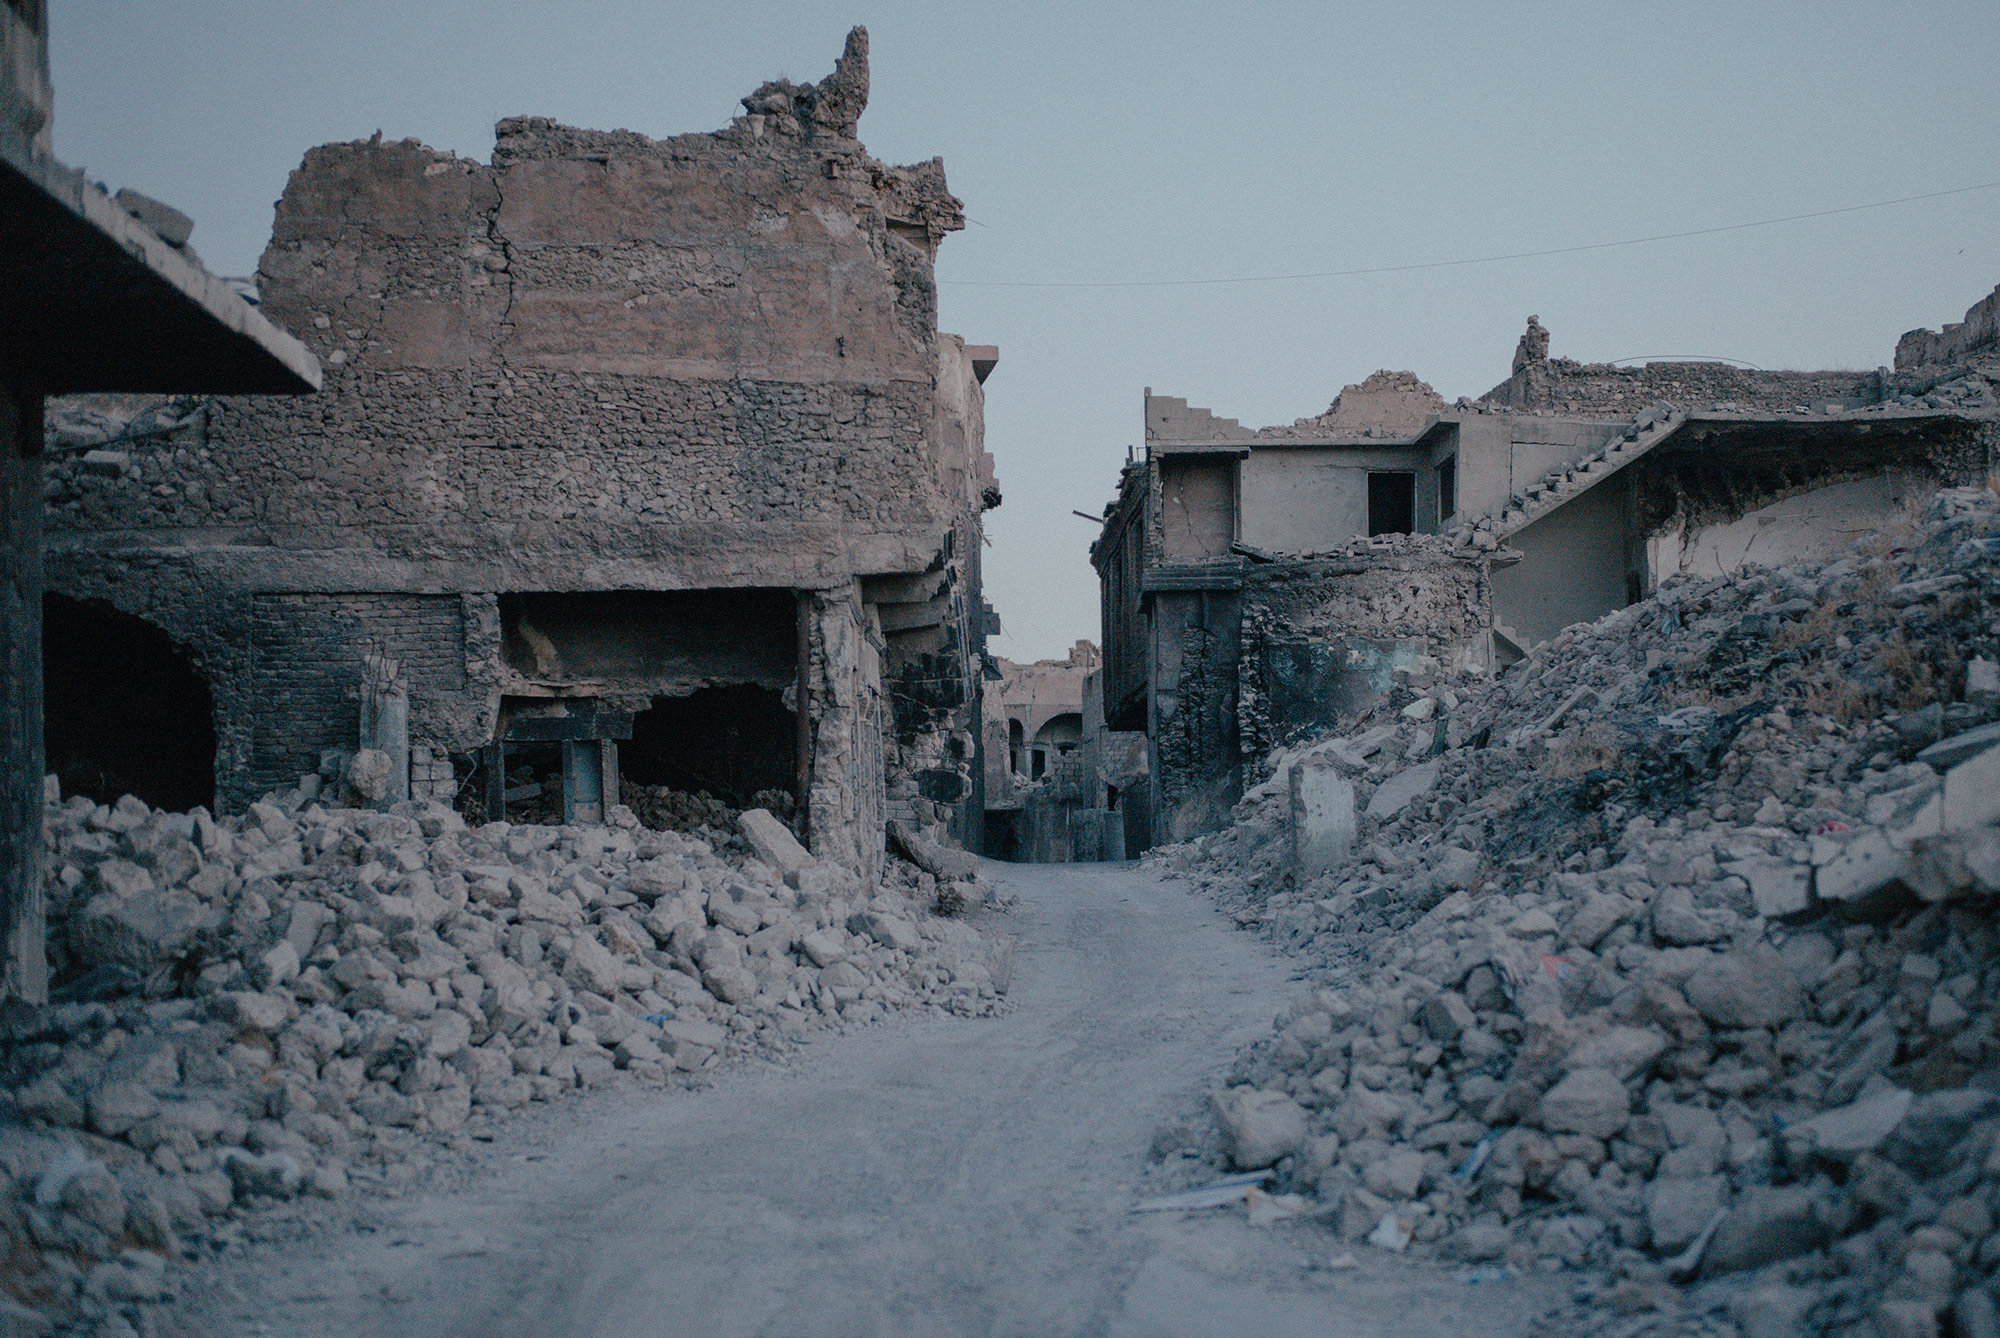 Die Altstadt von Mossul in Trümmern. Nach dem Konflikt kehrten nur wenige Menschen zurück, um ihre Häuser wieder aufzubauen. 